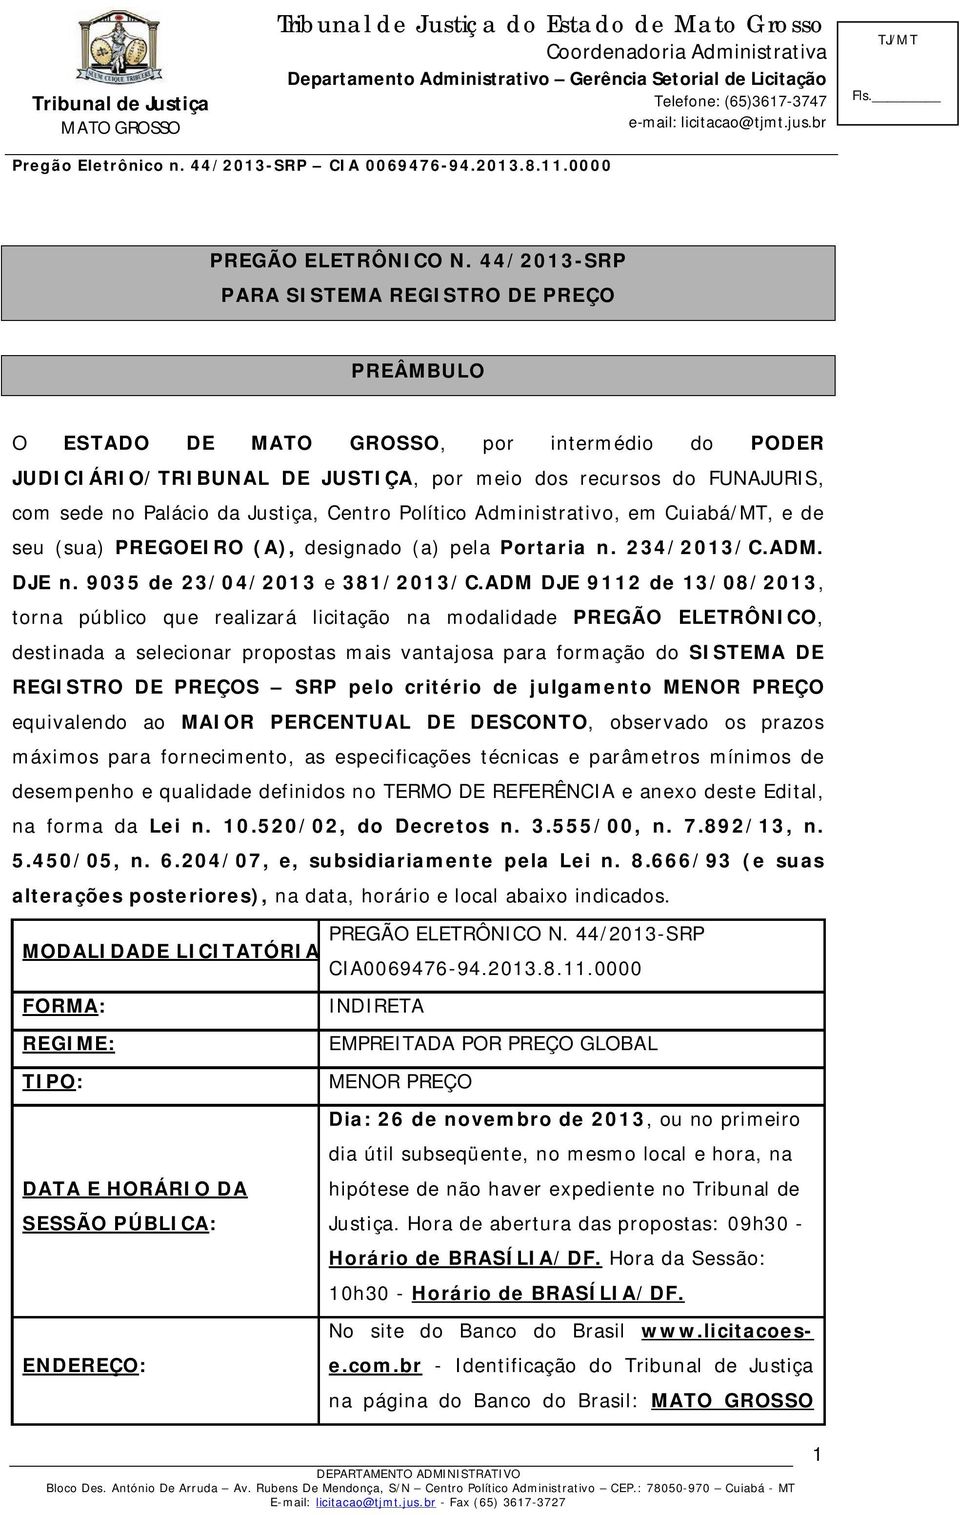 Político Administrativo, em Cuiabá/MT, e de seu (sua) PREGOEIRO (A), designado (a) pela Portaria n. 234/2013/C.ADM. DJE n. 9035 de 23/04/2013 e 381/2013/C.